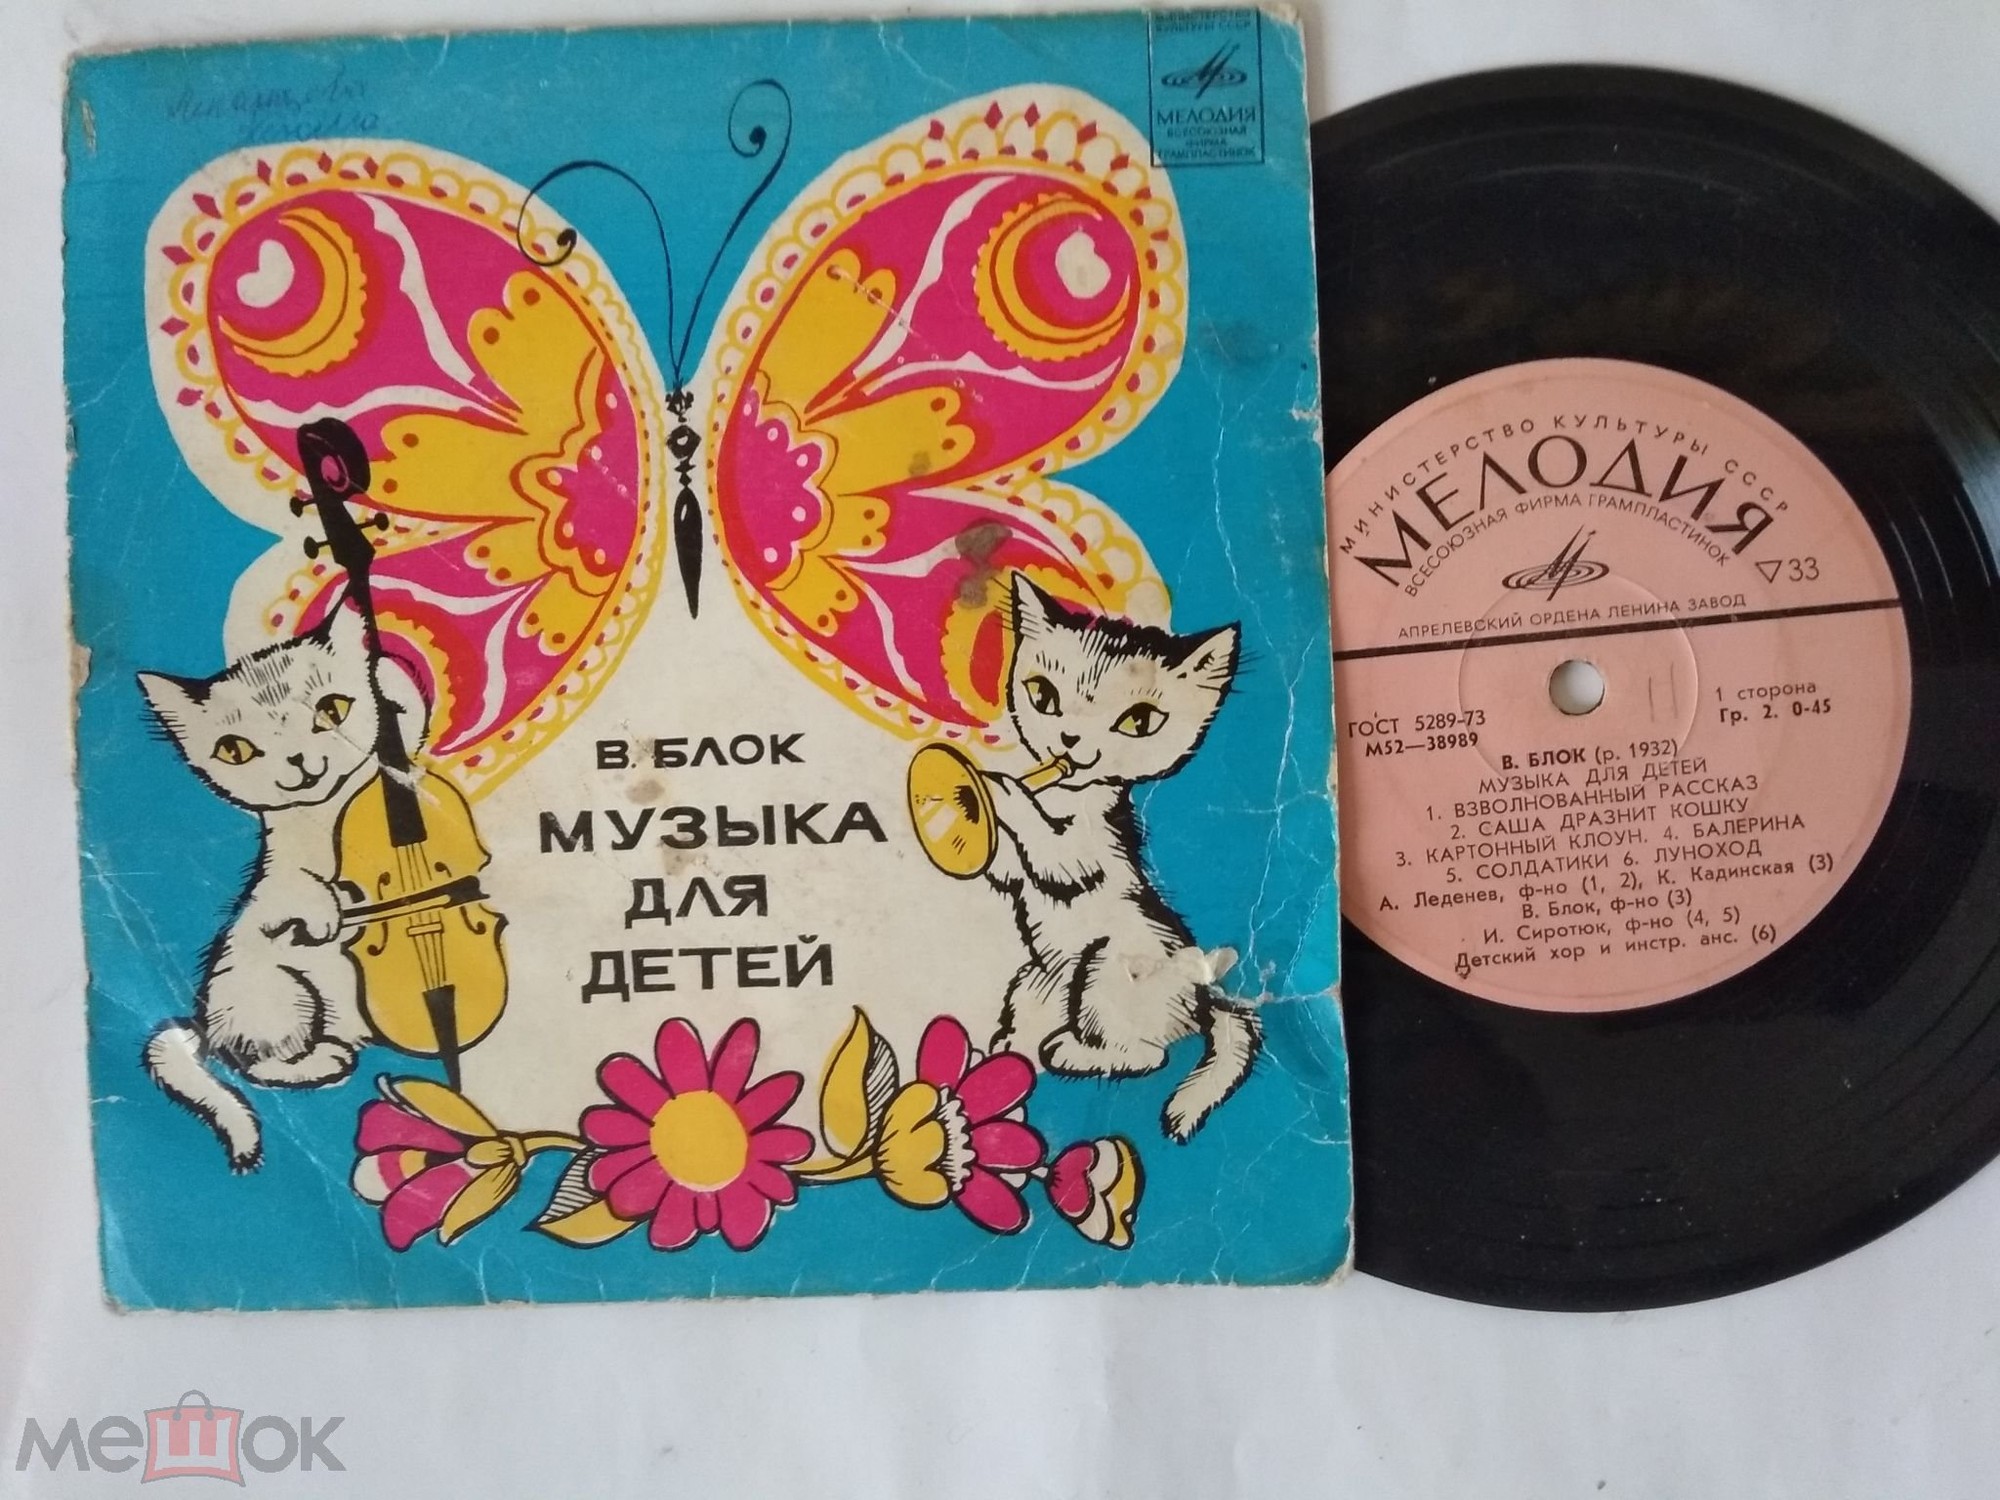 В. БЛОК (р. 1932): Музыка для детей